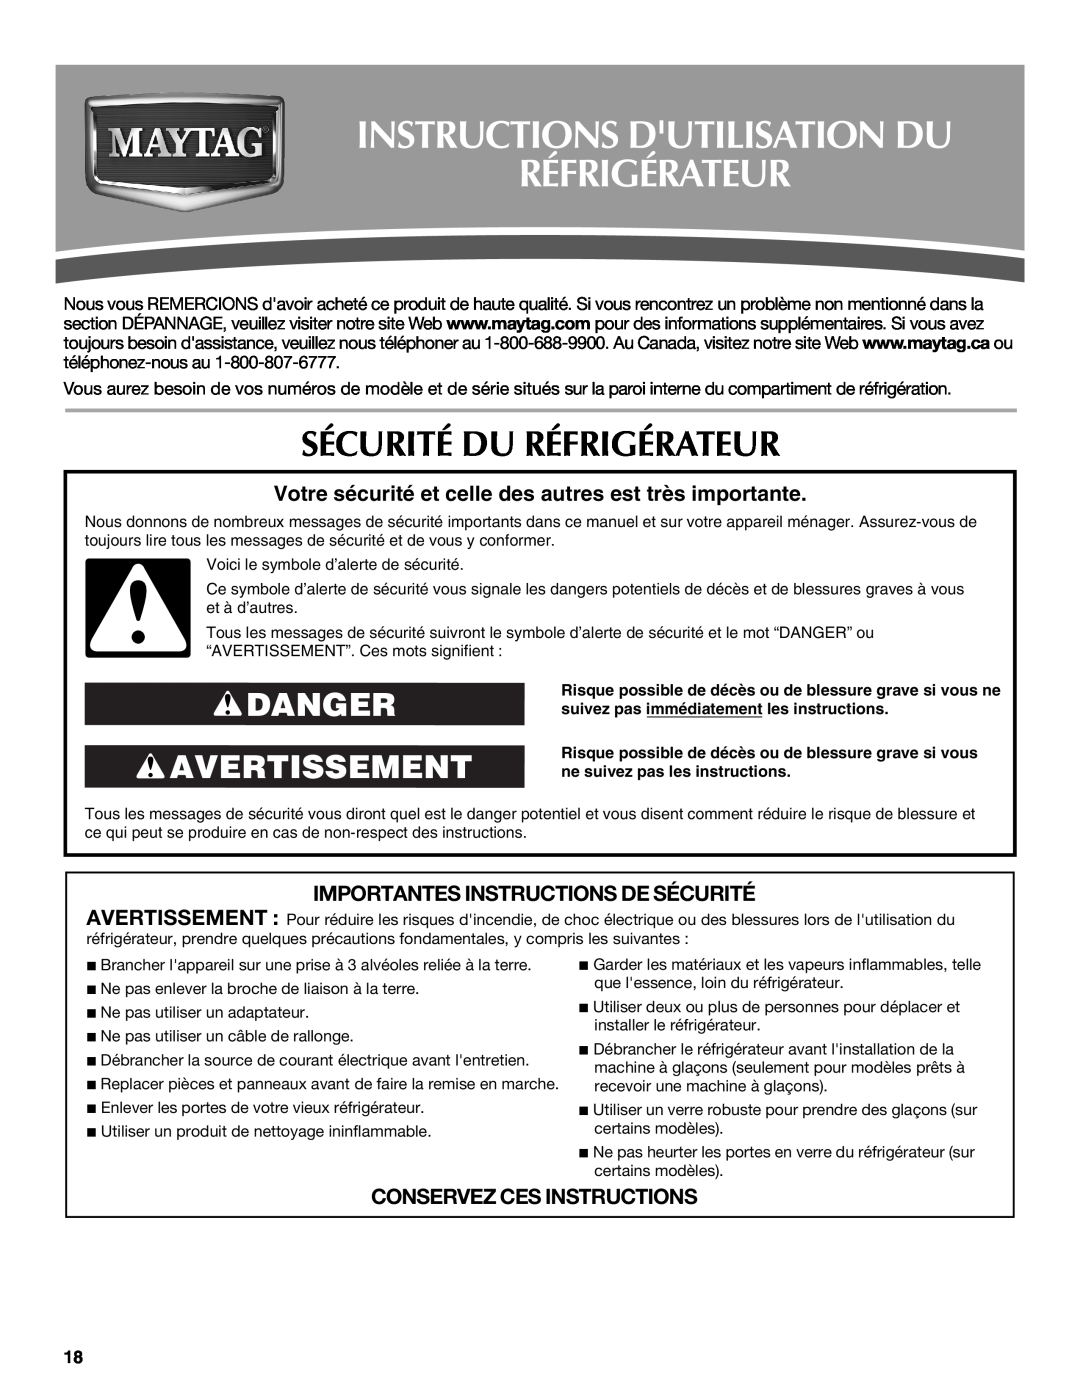 Maytag W10321478A Instructions Dutilisation Du Réfrigérateur, Sécurité Du Réfrigérateur, Danger Avertissement 